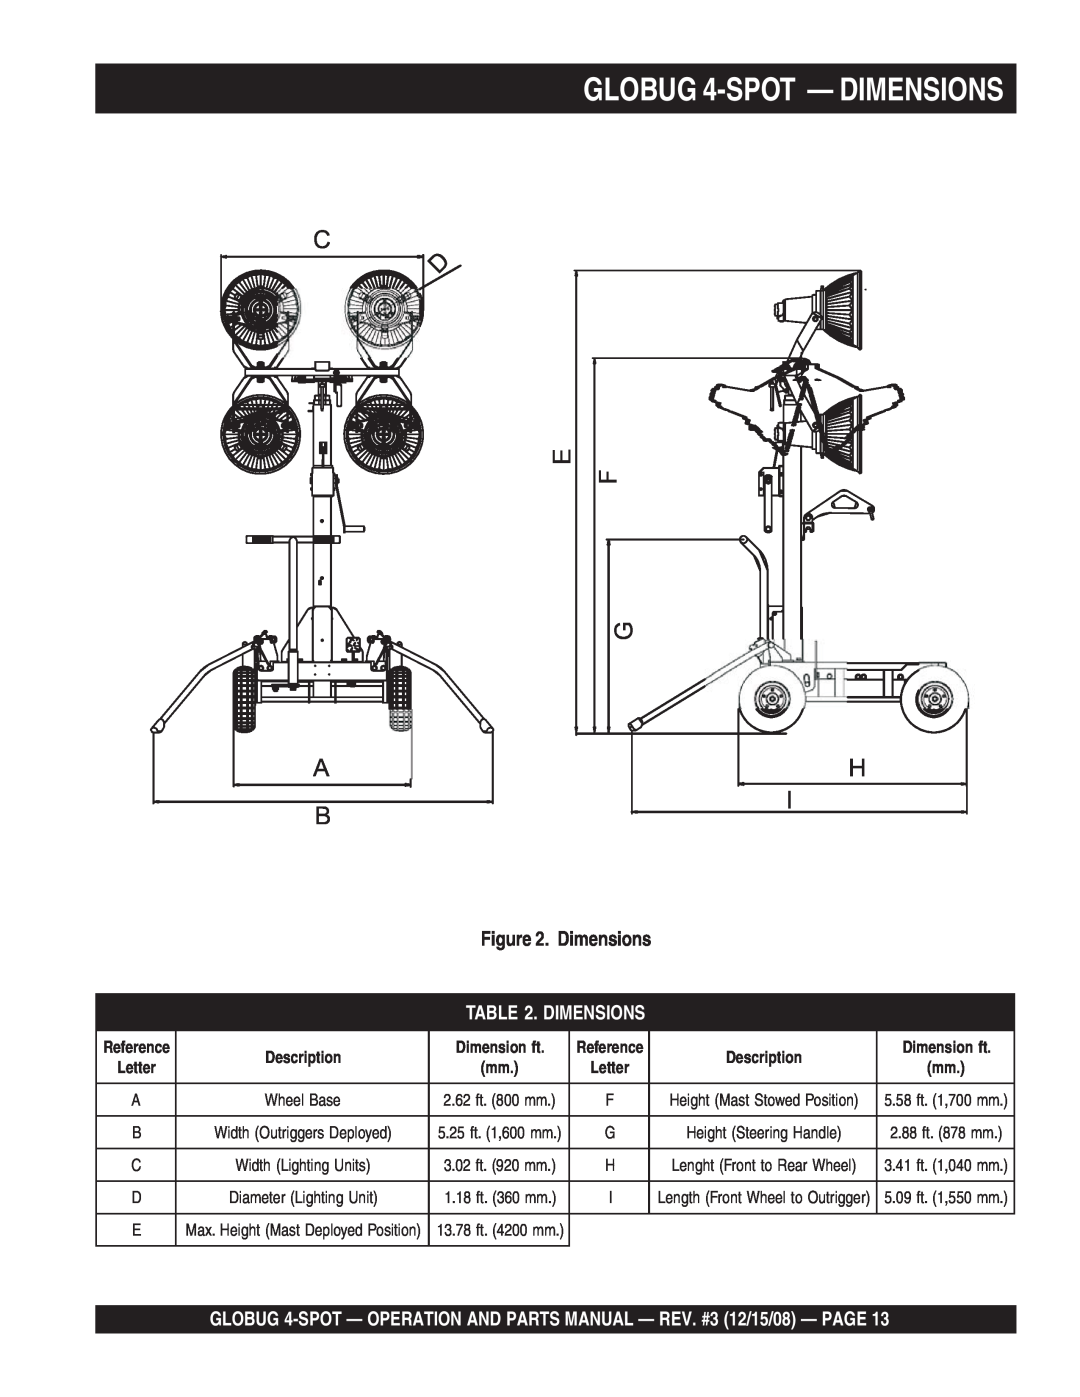 Multiquip gb43sc manual GLOBUG 4-SPOT - DIMENSIONS, C F E G A B, Dimensions, Description, Dimension ft, 2.62 ft. 800 mm 